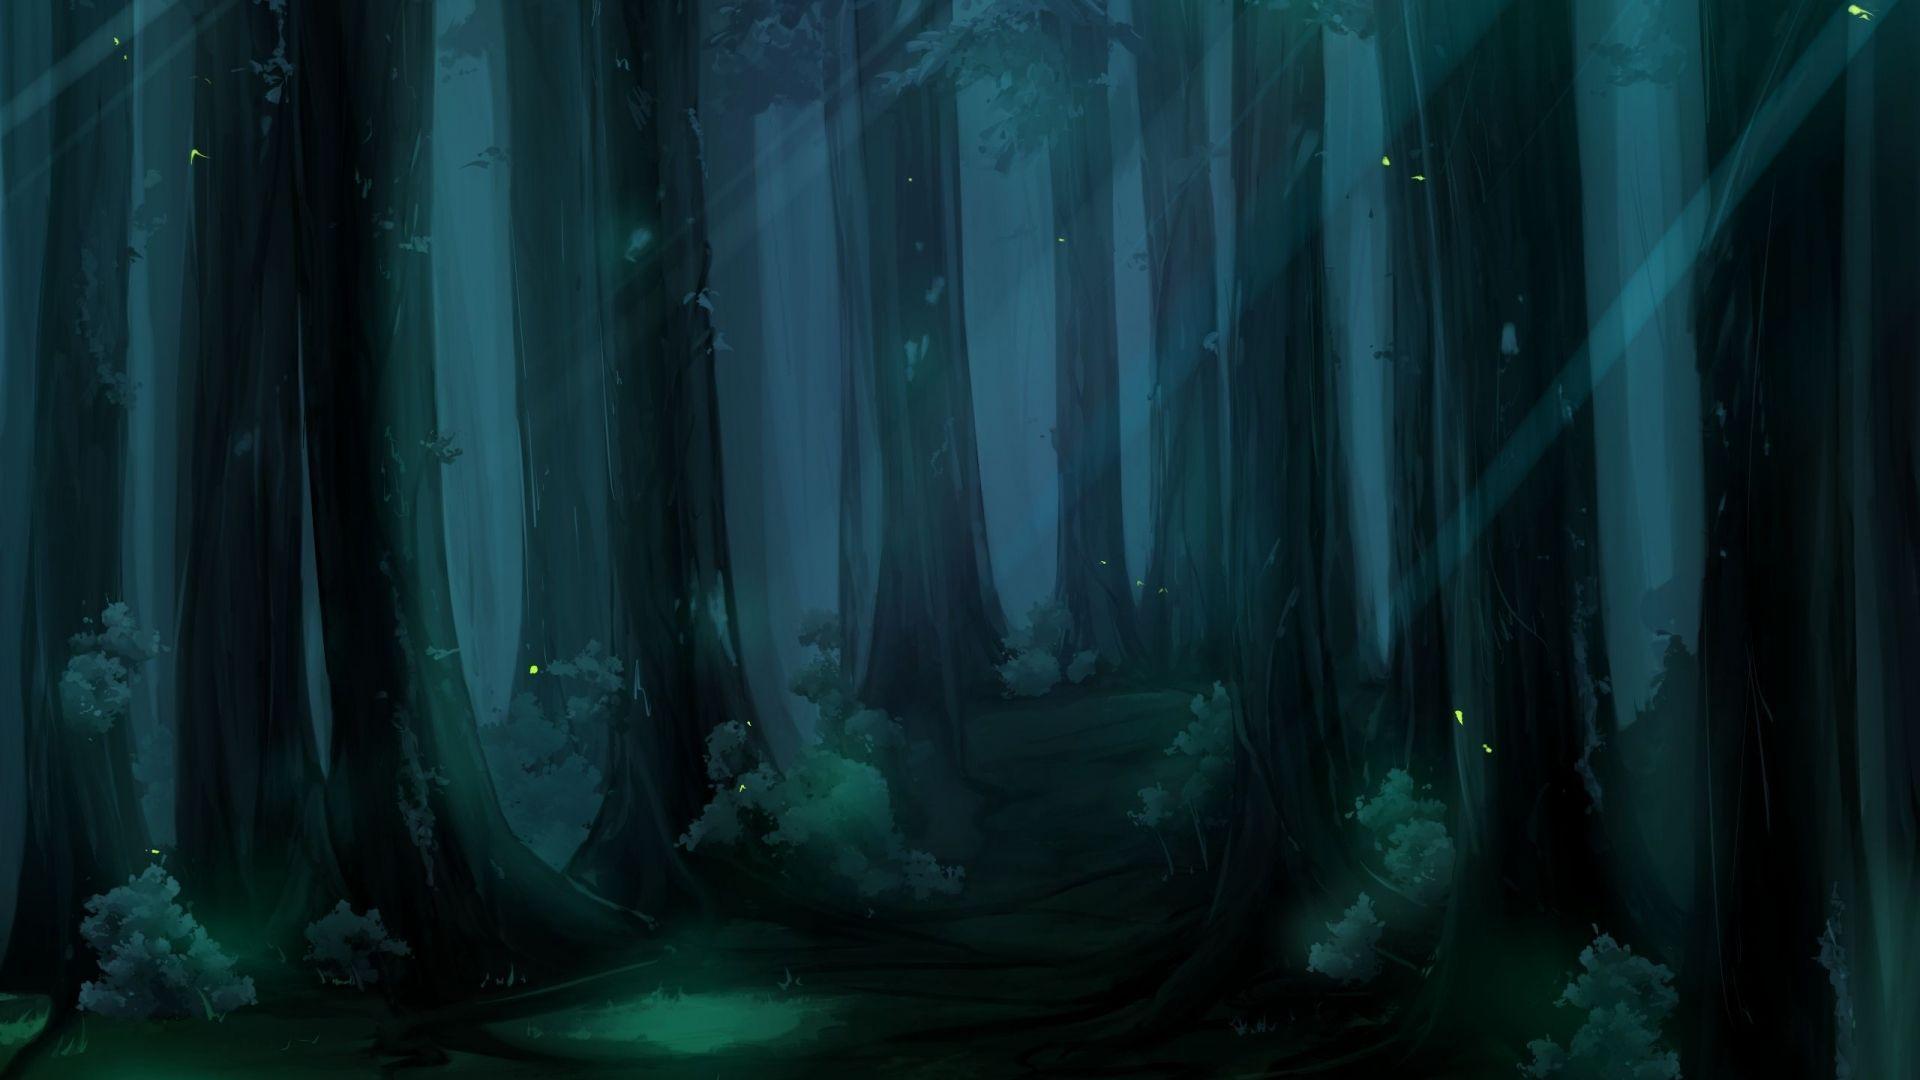 Hình nền anime rừng đen đầy u ám này sẽ đưa bạn vào một thế giới hoang dã đầy bí ẩn, nơi những sinh vật kỳ lạ ẩn nấp và chờ đợi để khám phá.